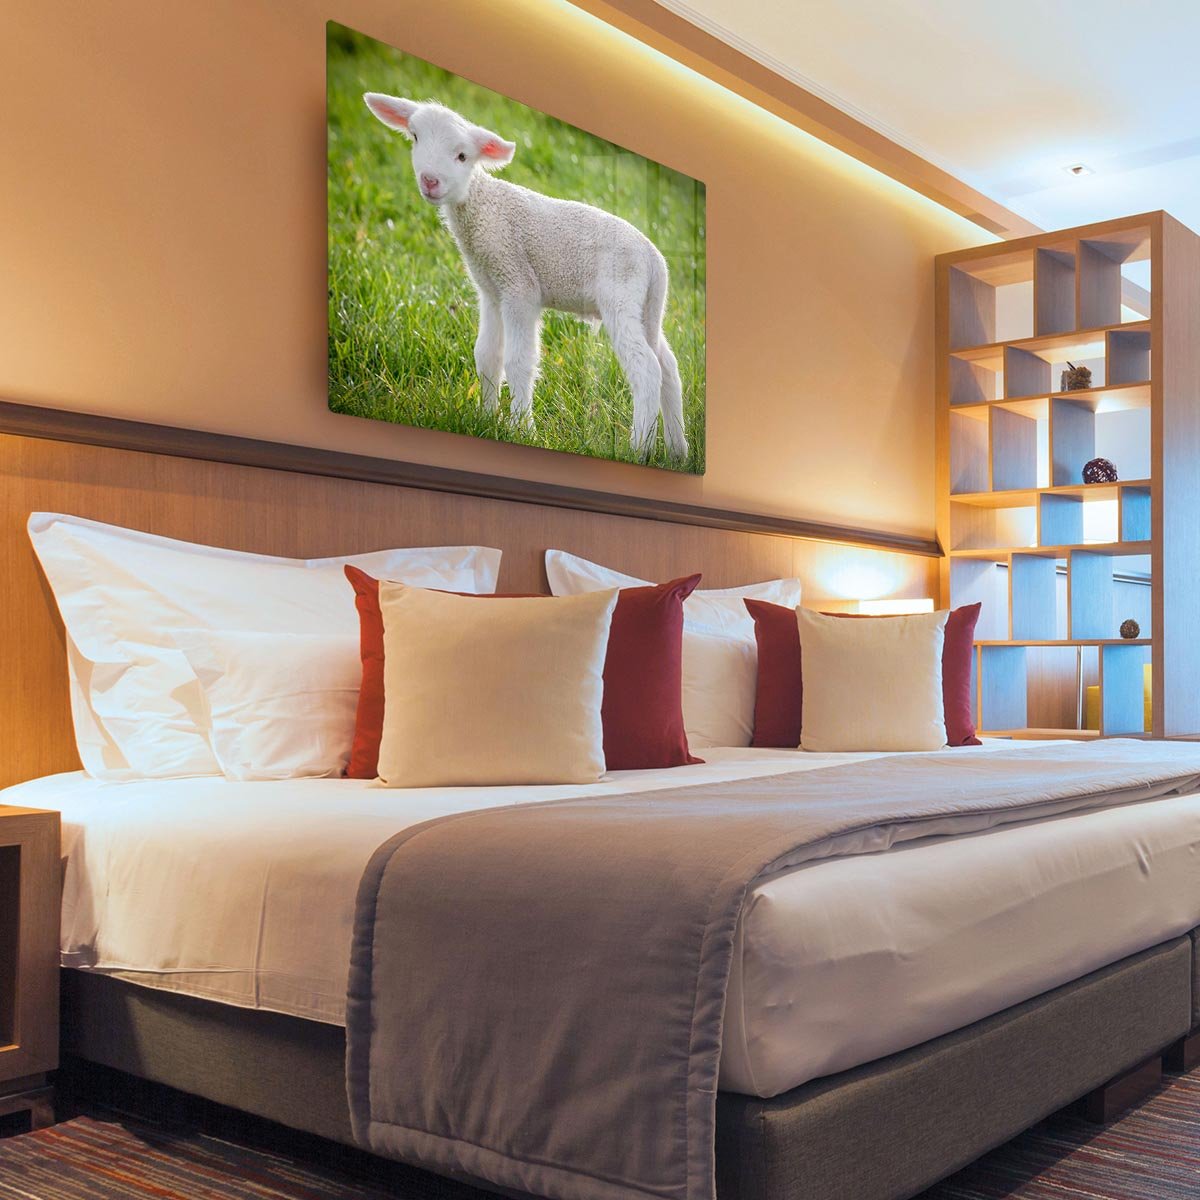 A white suffolk lamb HD Metal Print - Canvas Art Rocks - 3